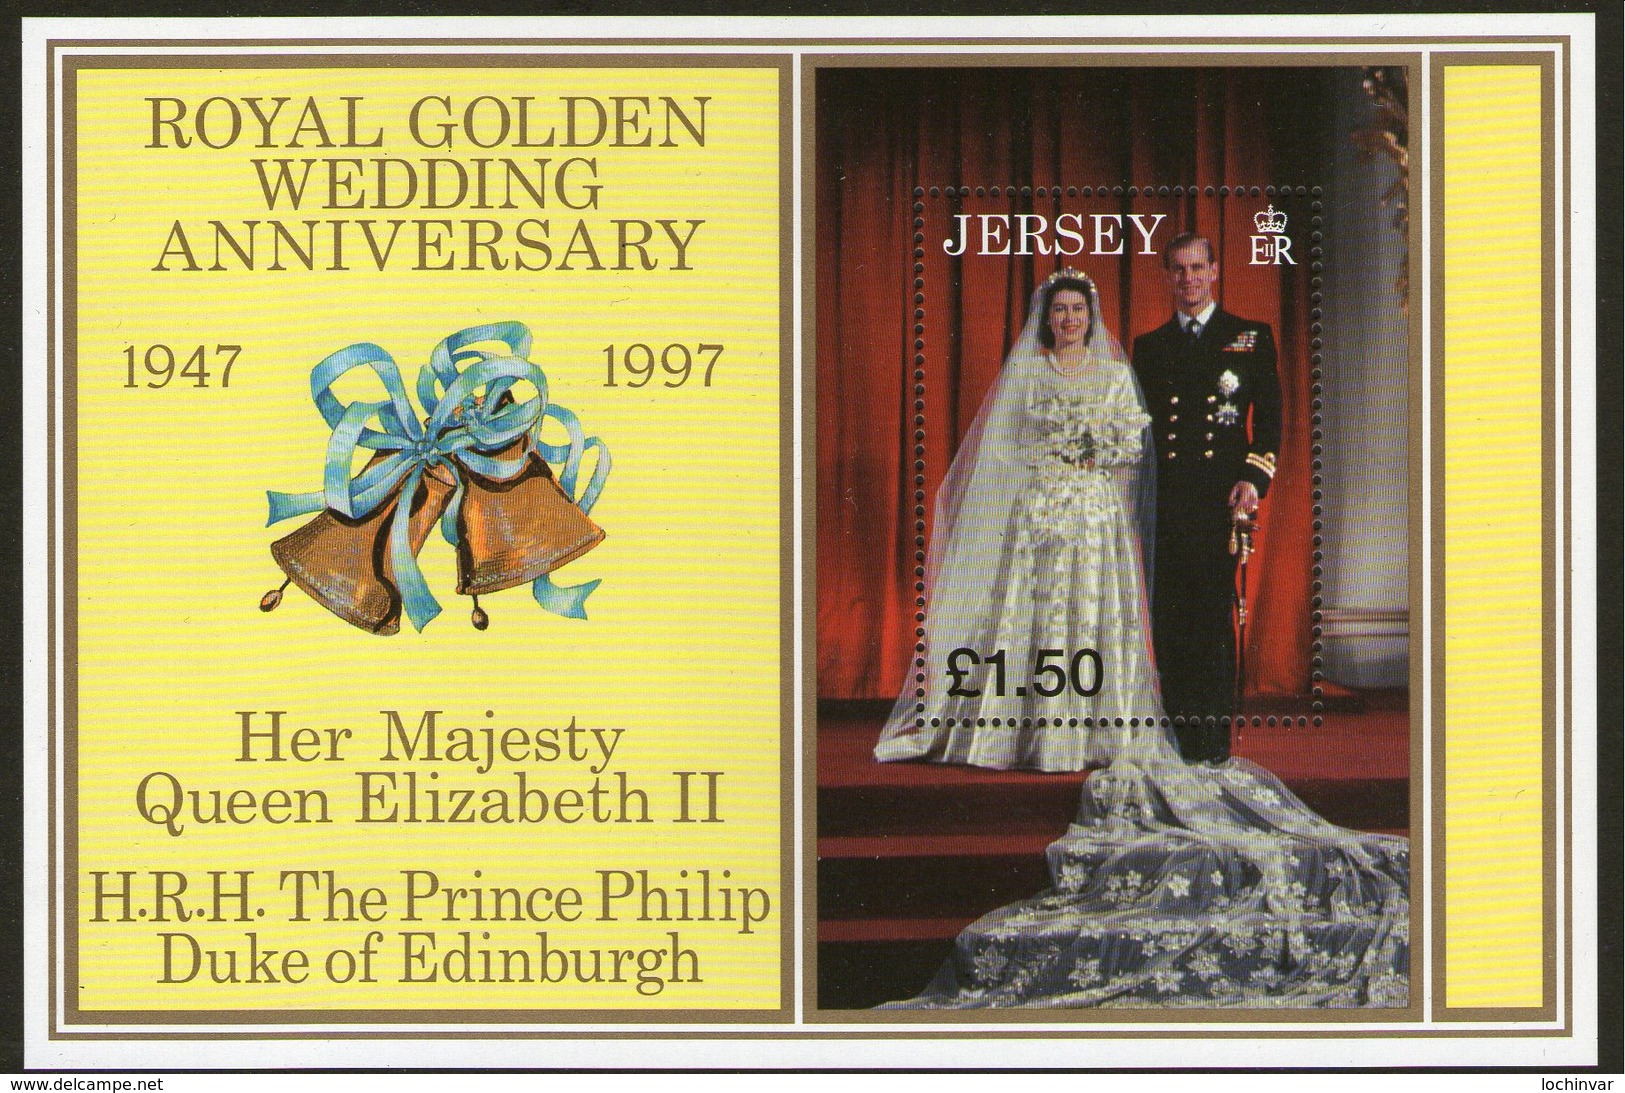 JERSEY, 1997 QUEENS WEDDING ANNIVERSARY MINISHEET MNH - Jersey